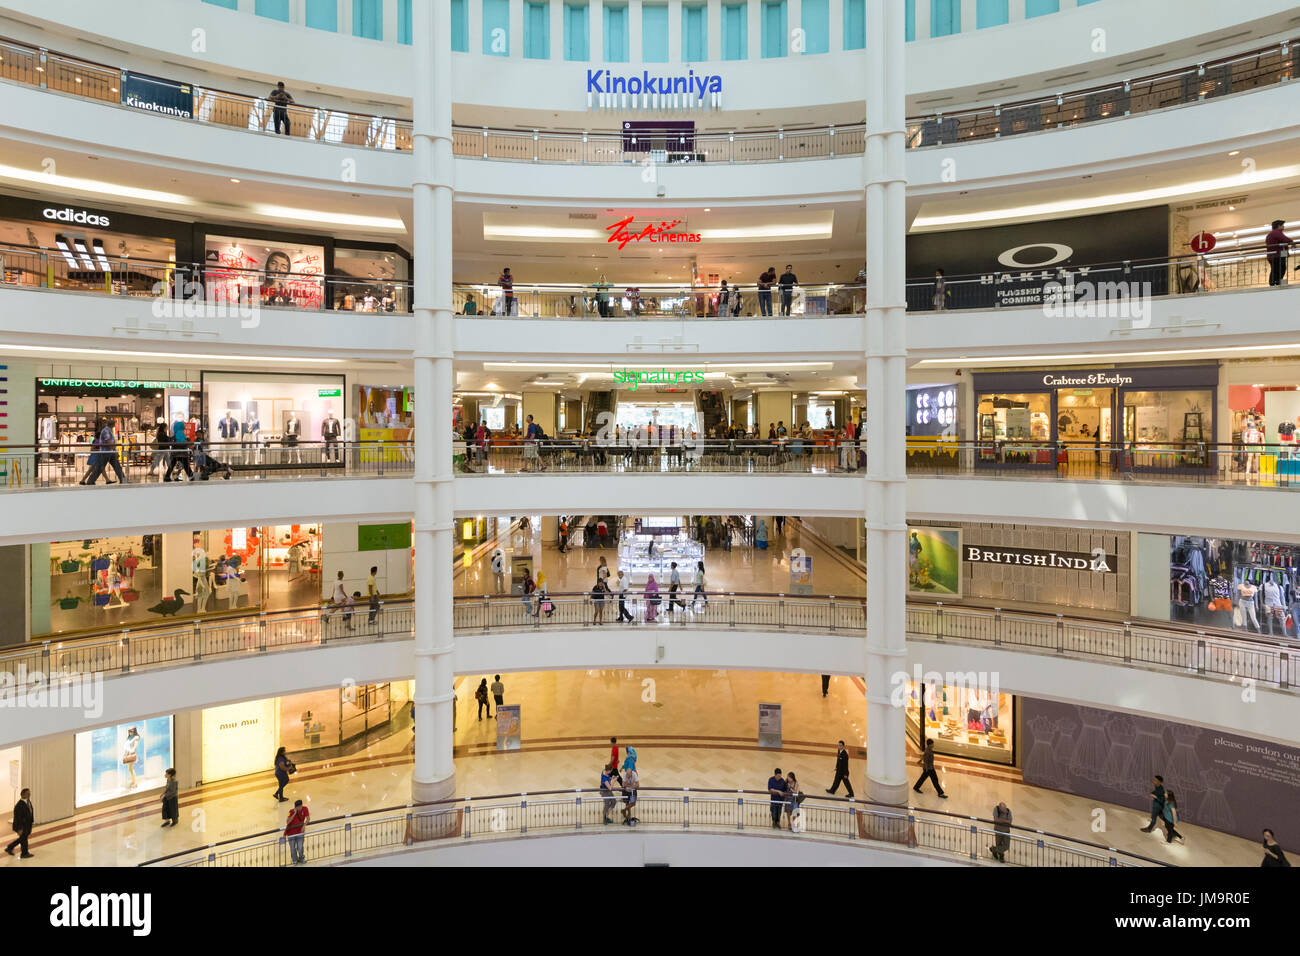 L'intérieur du centre commercial Suria KLCC, Kuala Lumpur, Malaisie Banque D'Images